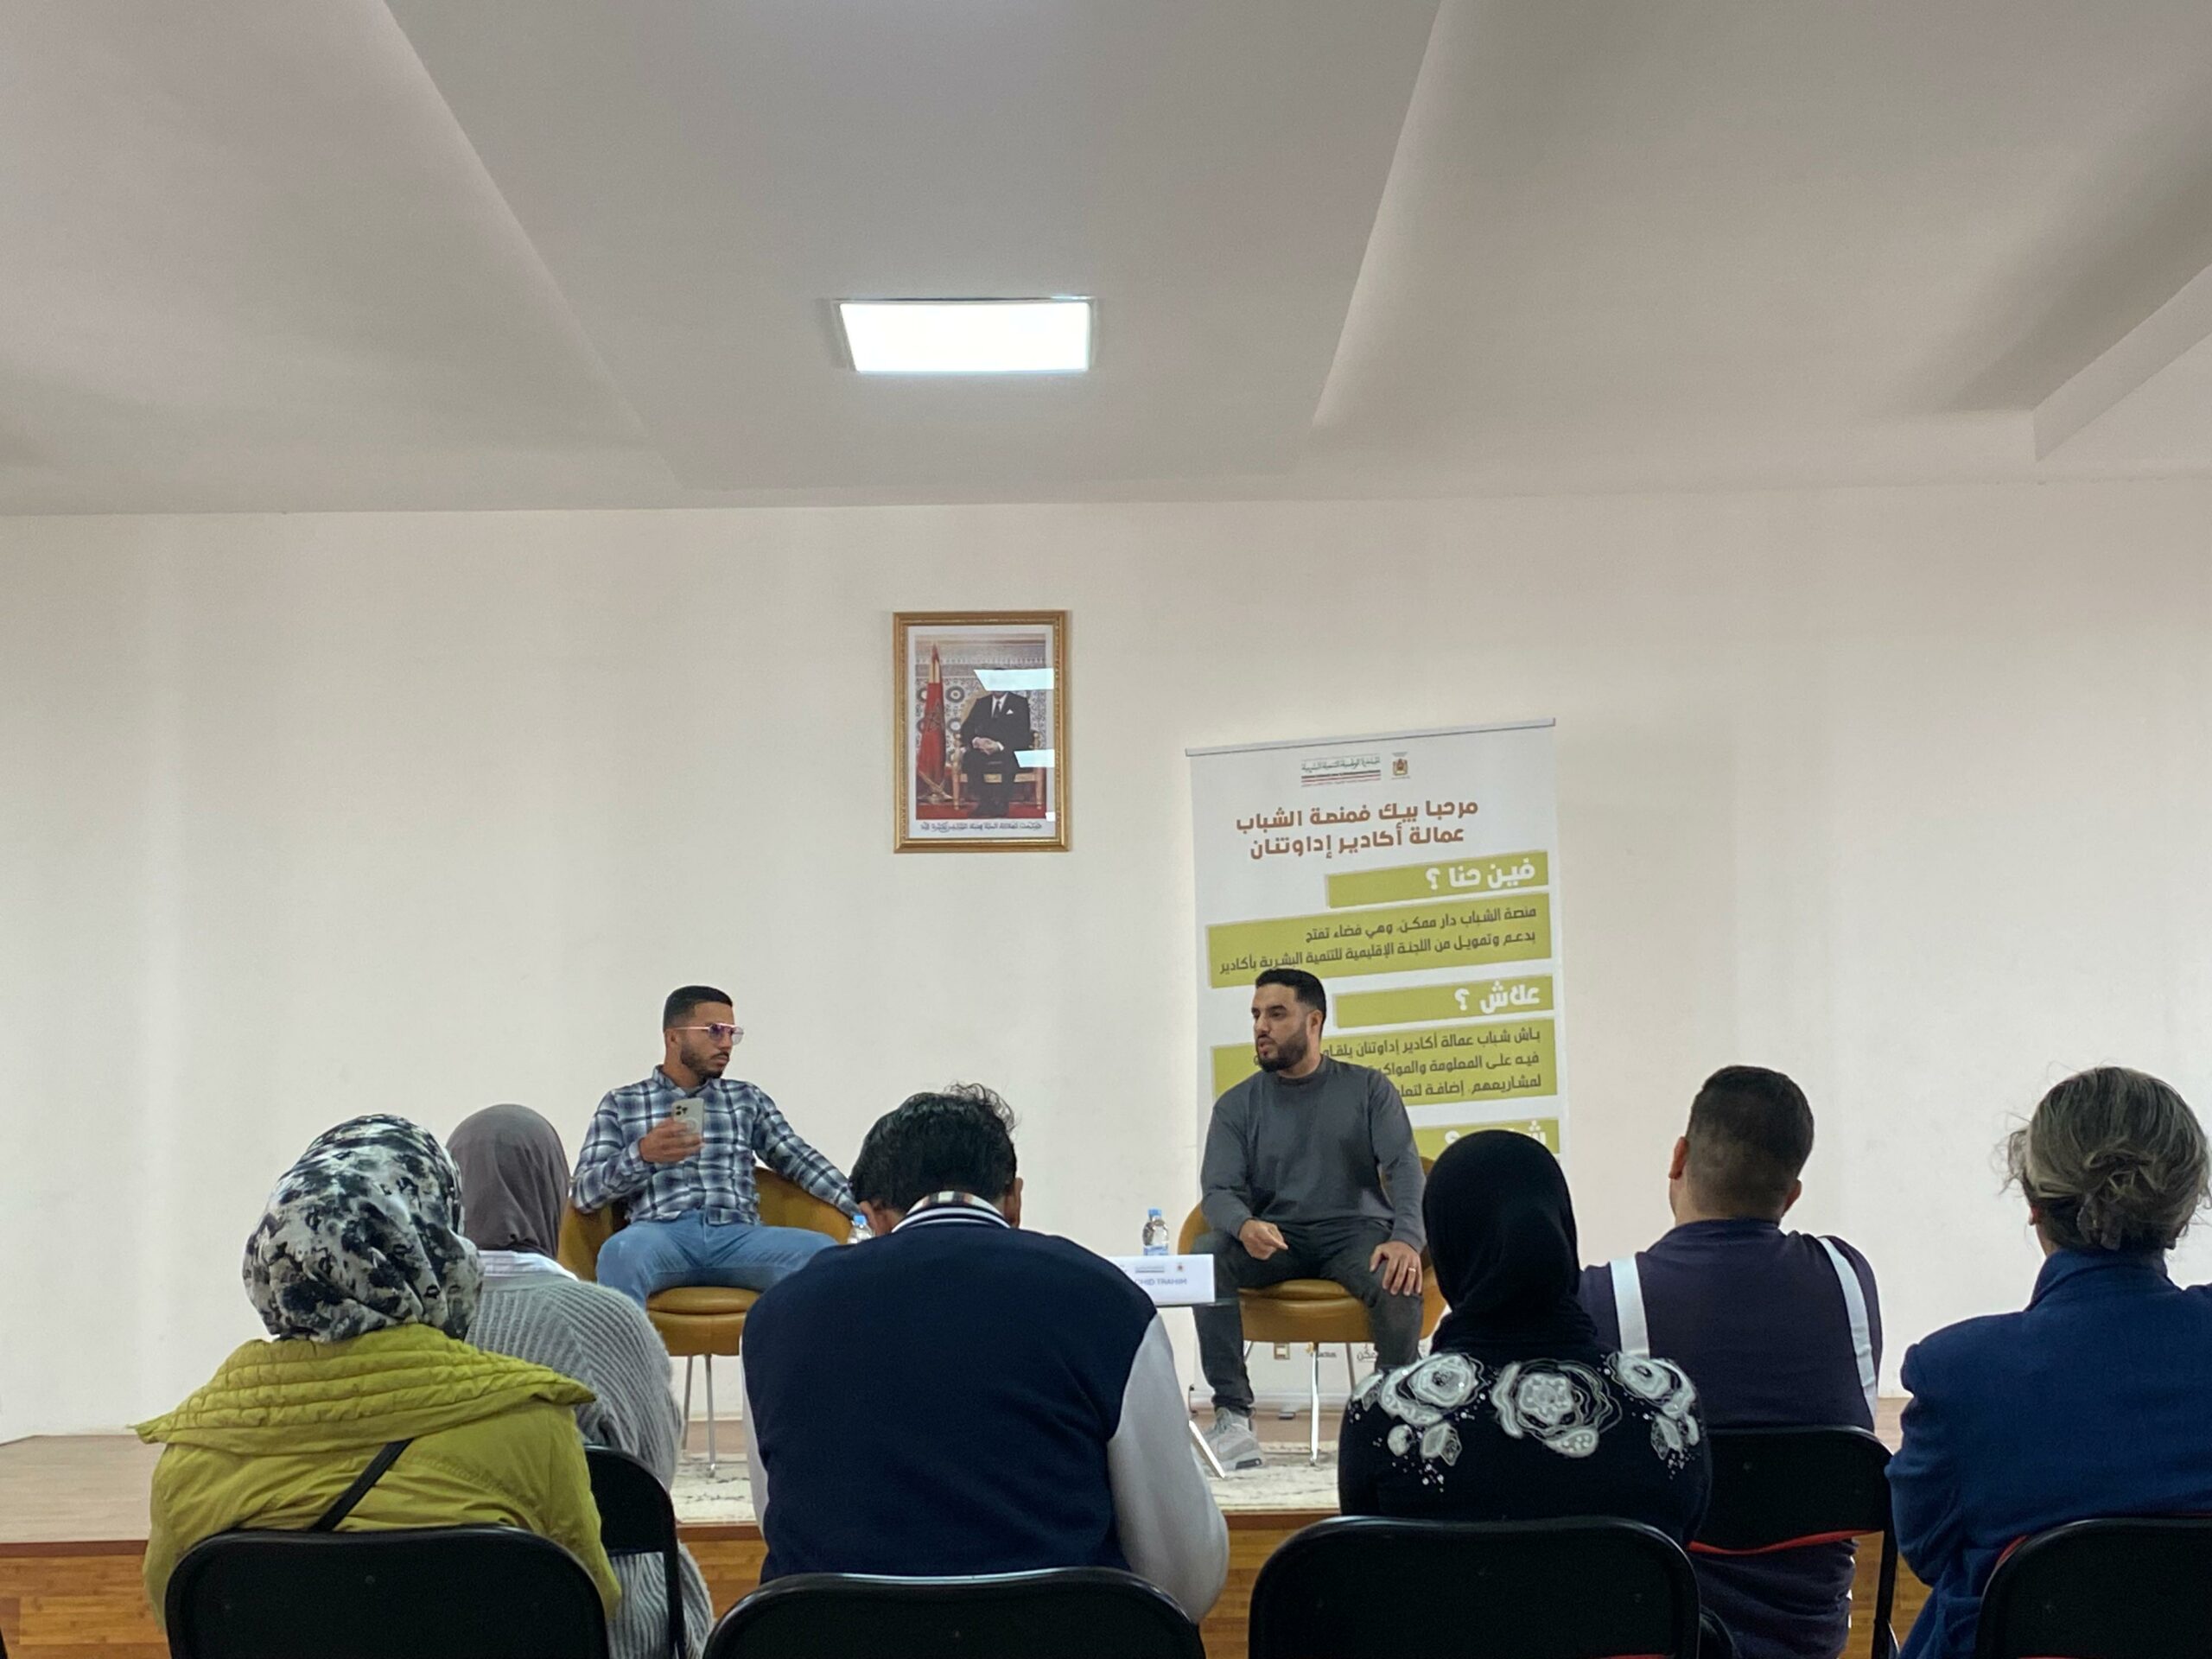 "نقاشات جيل أڭادير" النسخة الأولى Agadir Generation Talks #1